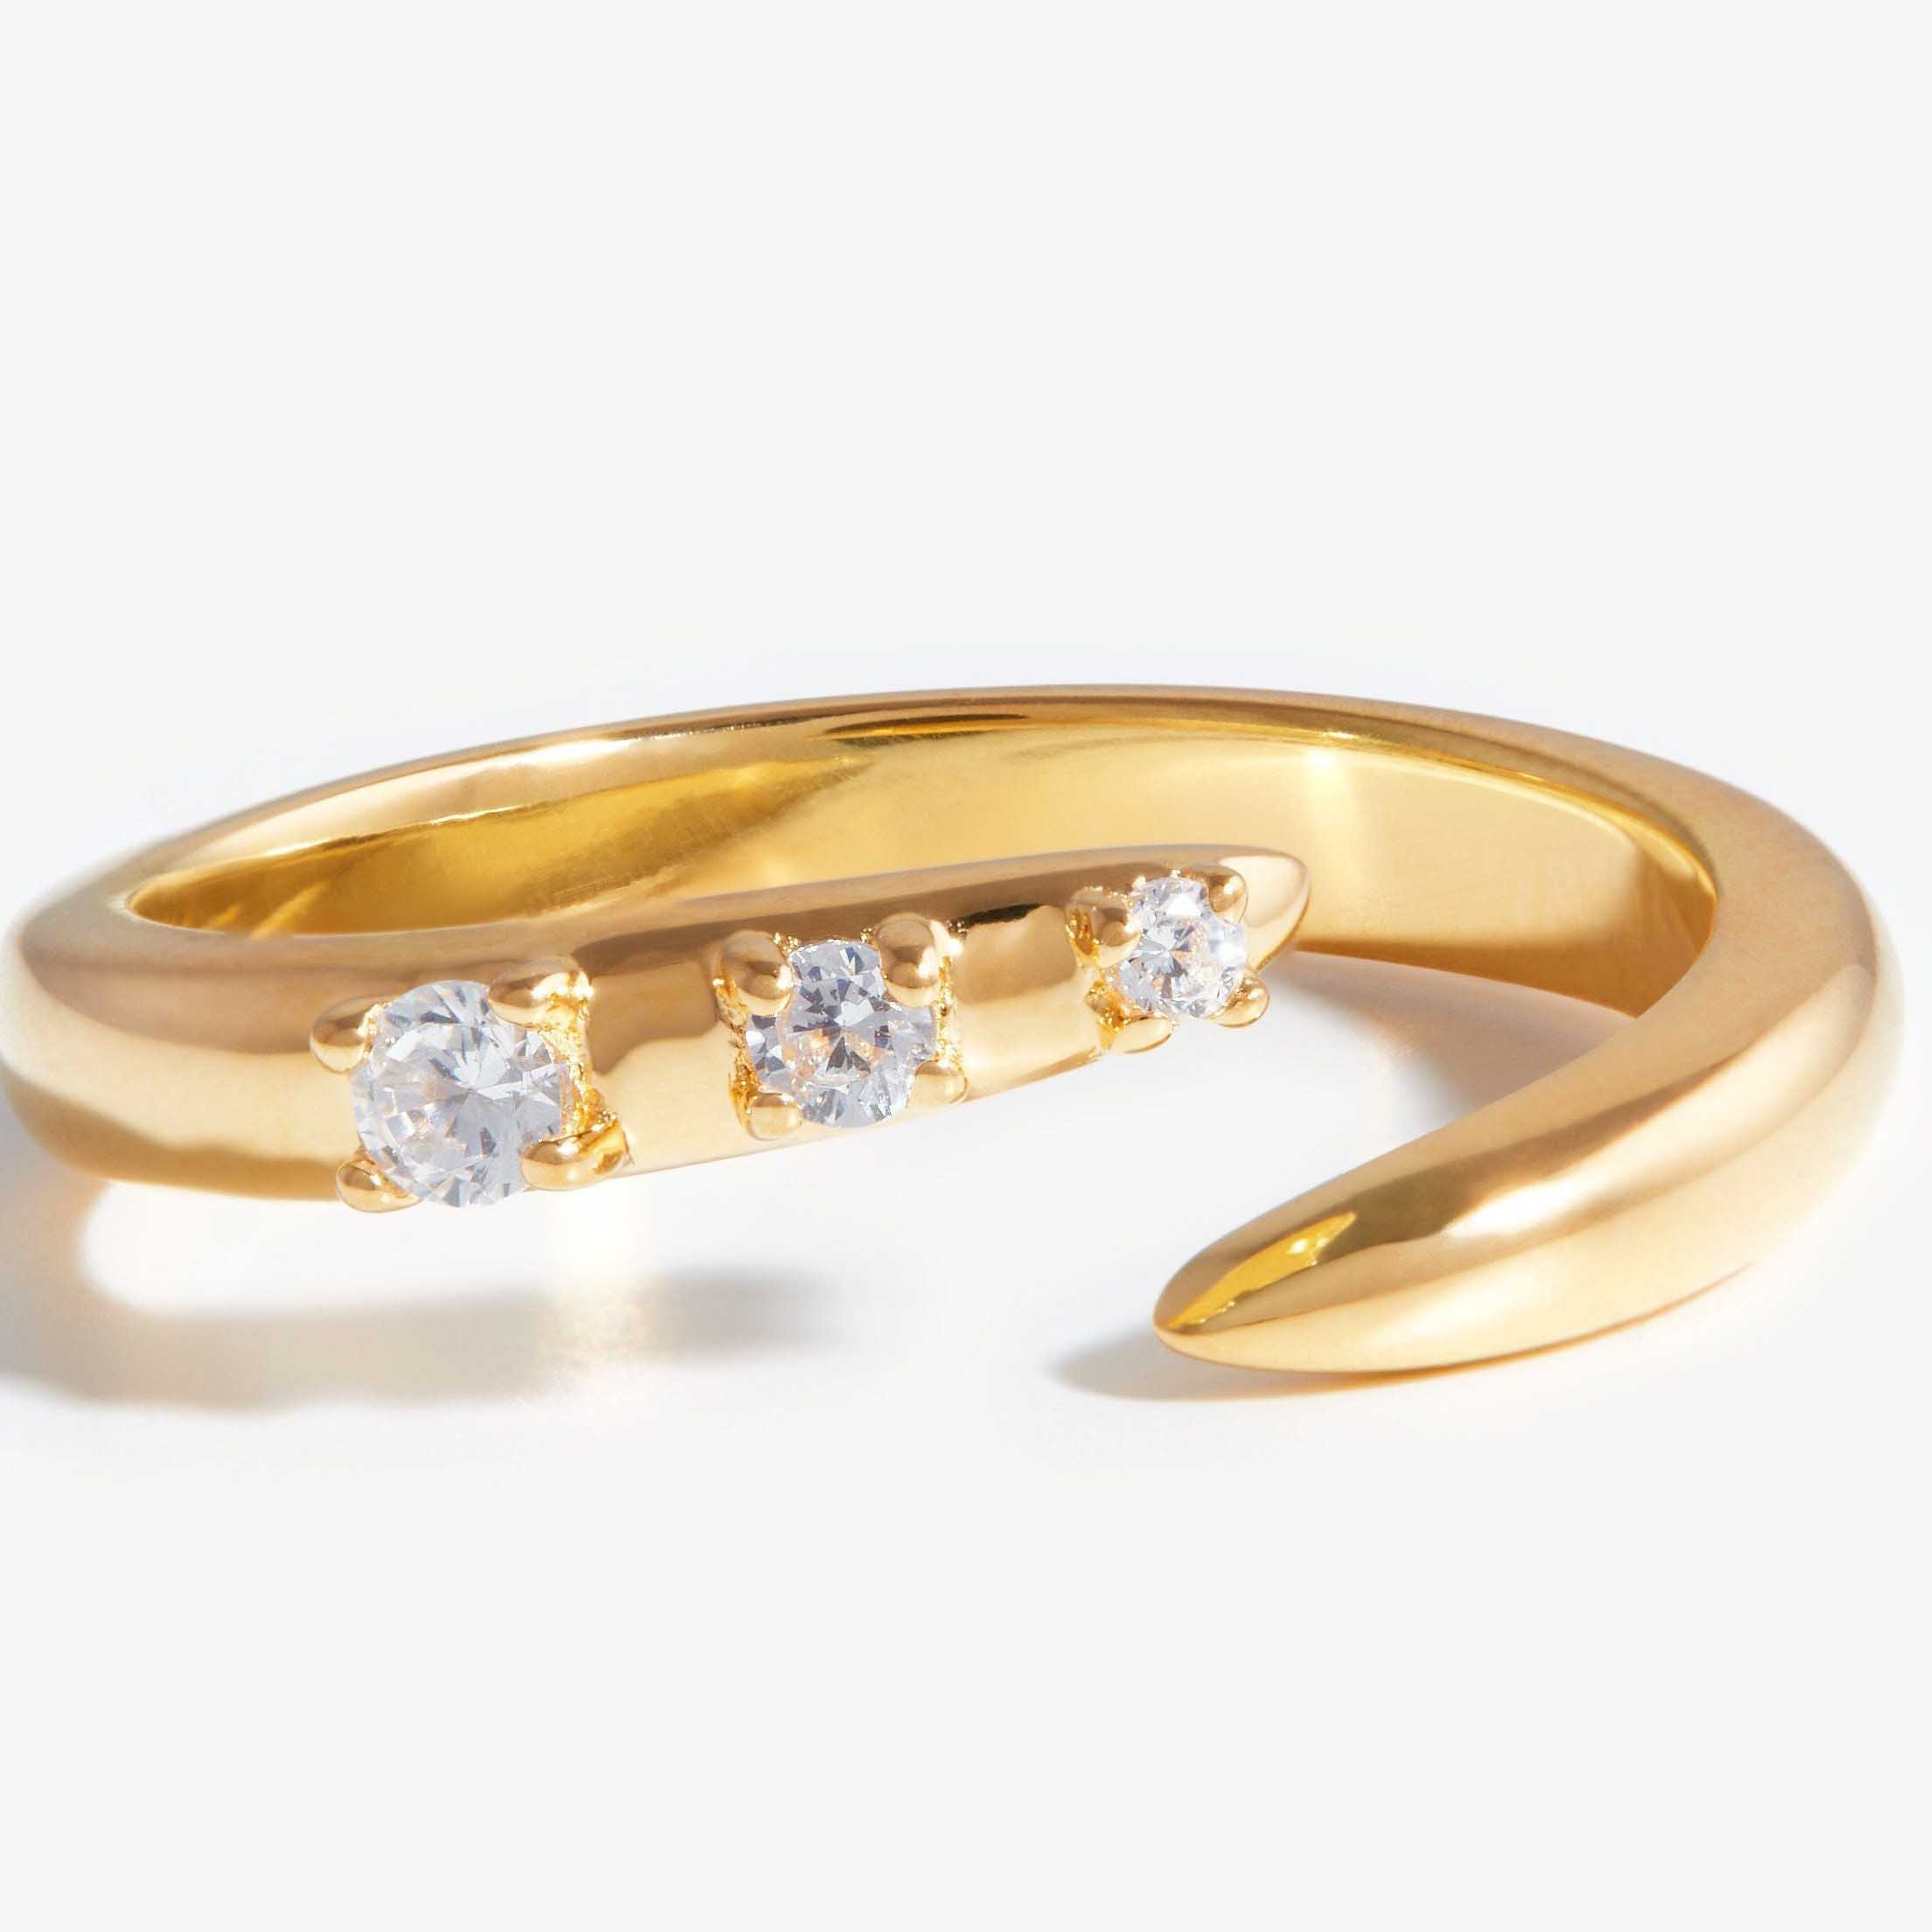 Zakázkový velkoobchodní otevřený prsten z kubické zirkonie vyrobený ze stříbra, ale zbarvený do zlata.